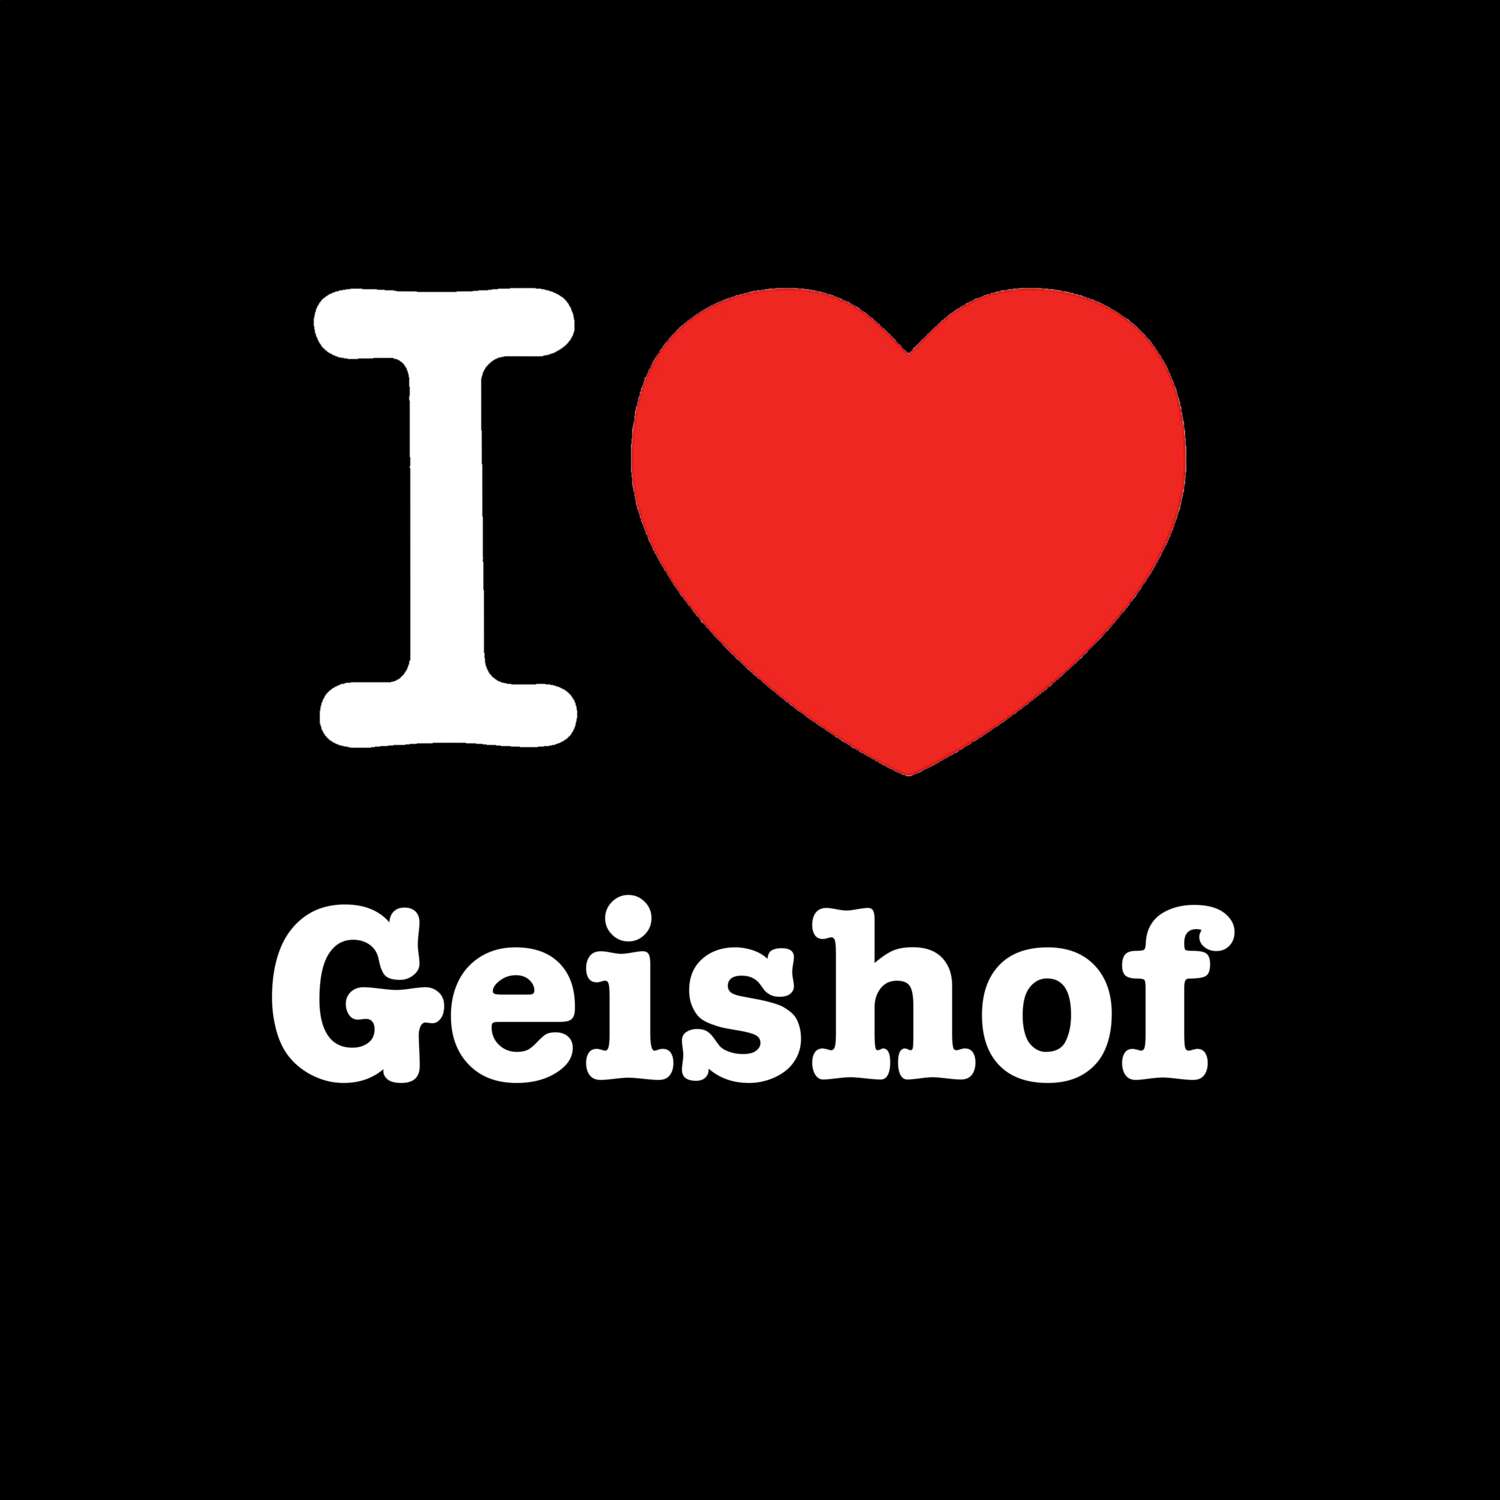 Geishof T-Shirt »I love«